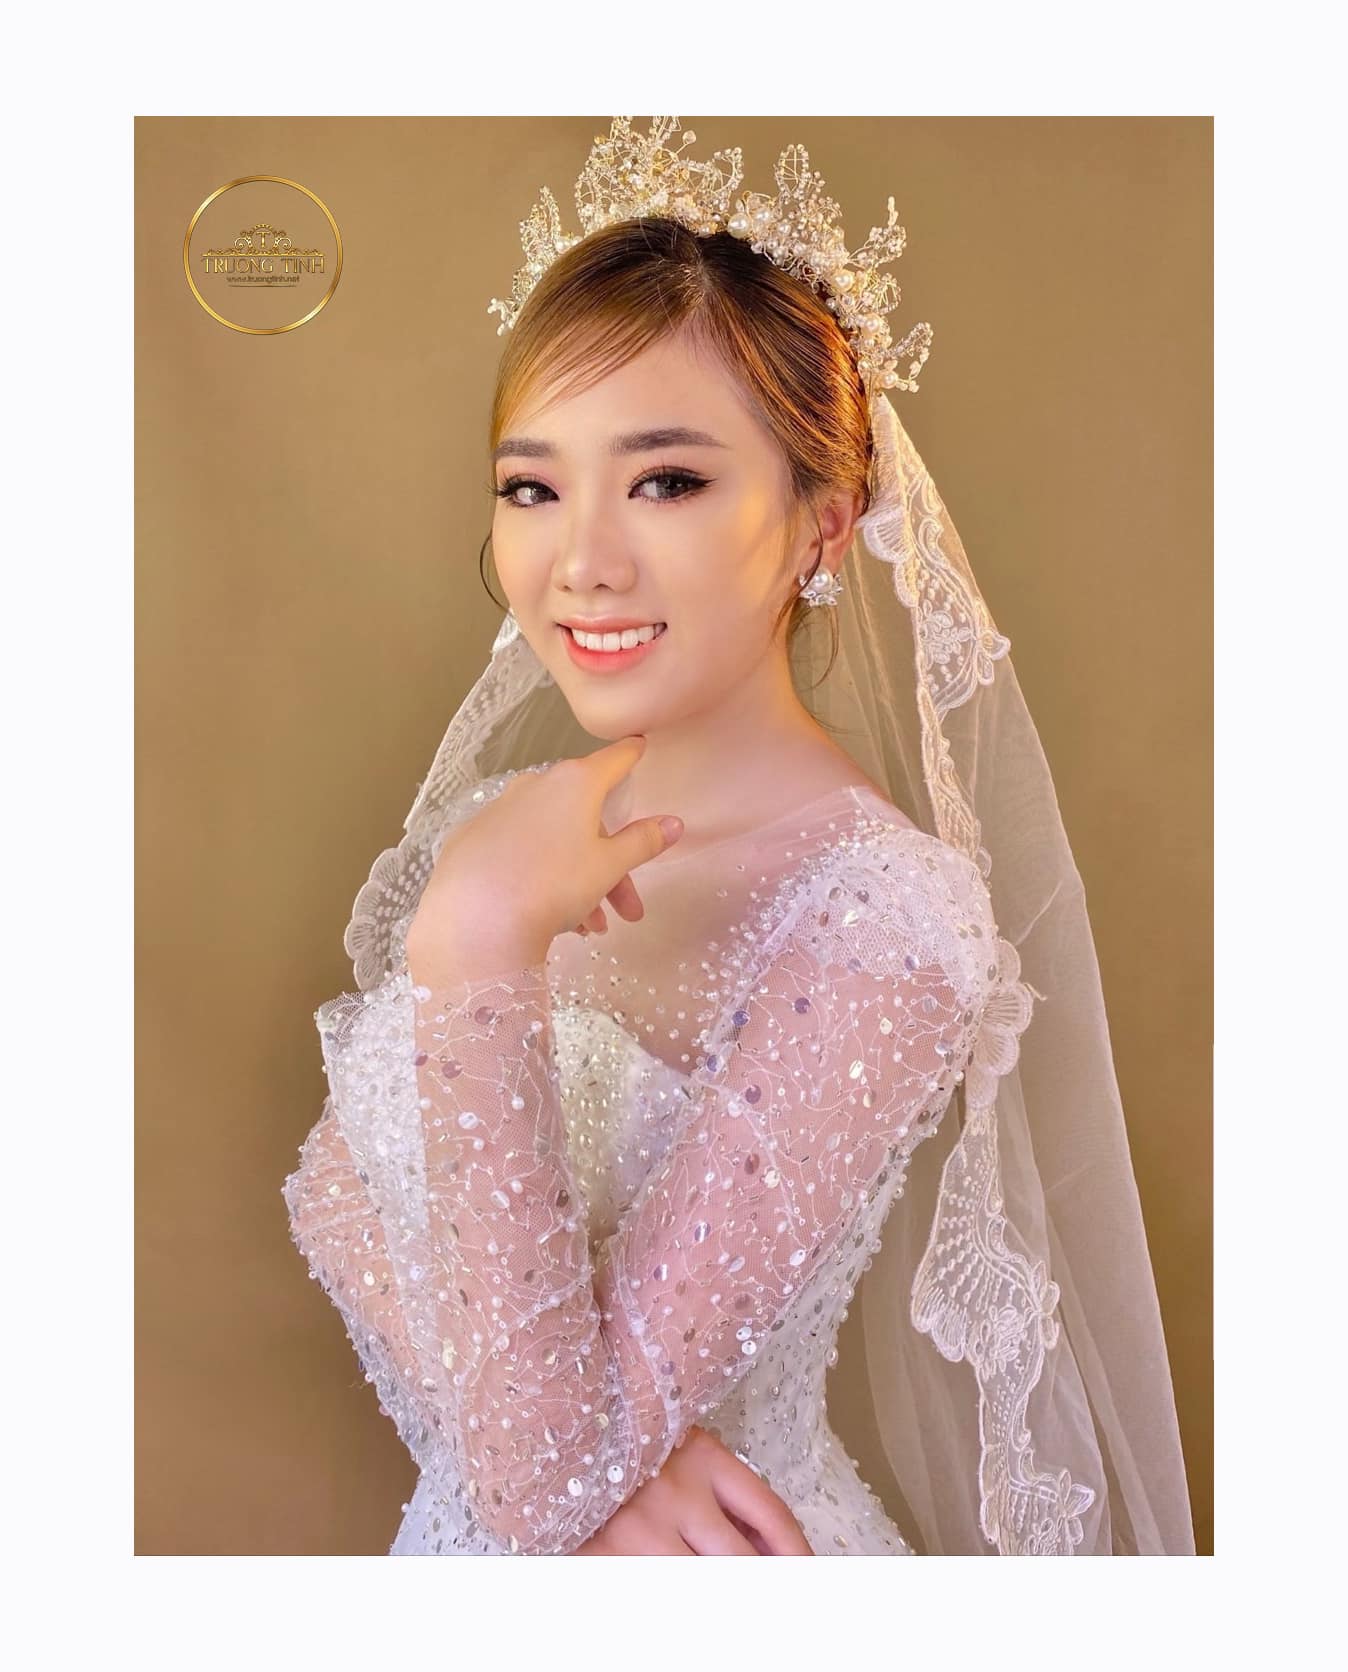 Các phong cách cô dâu siêu ngọt ngào đến từ Trương Tịnh Makeup Artist
